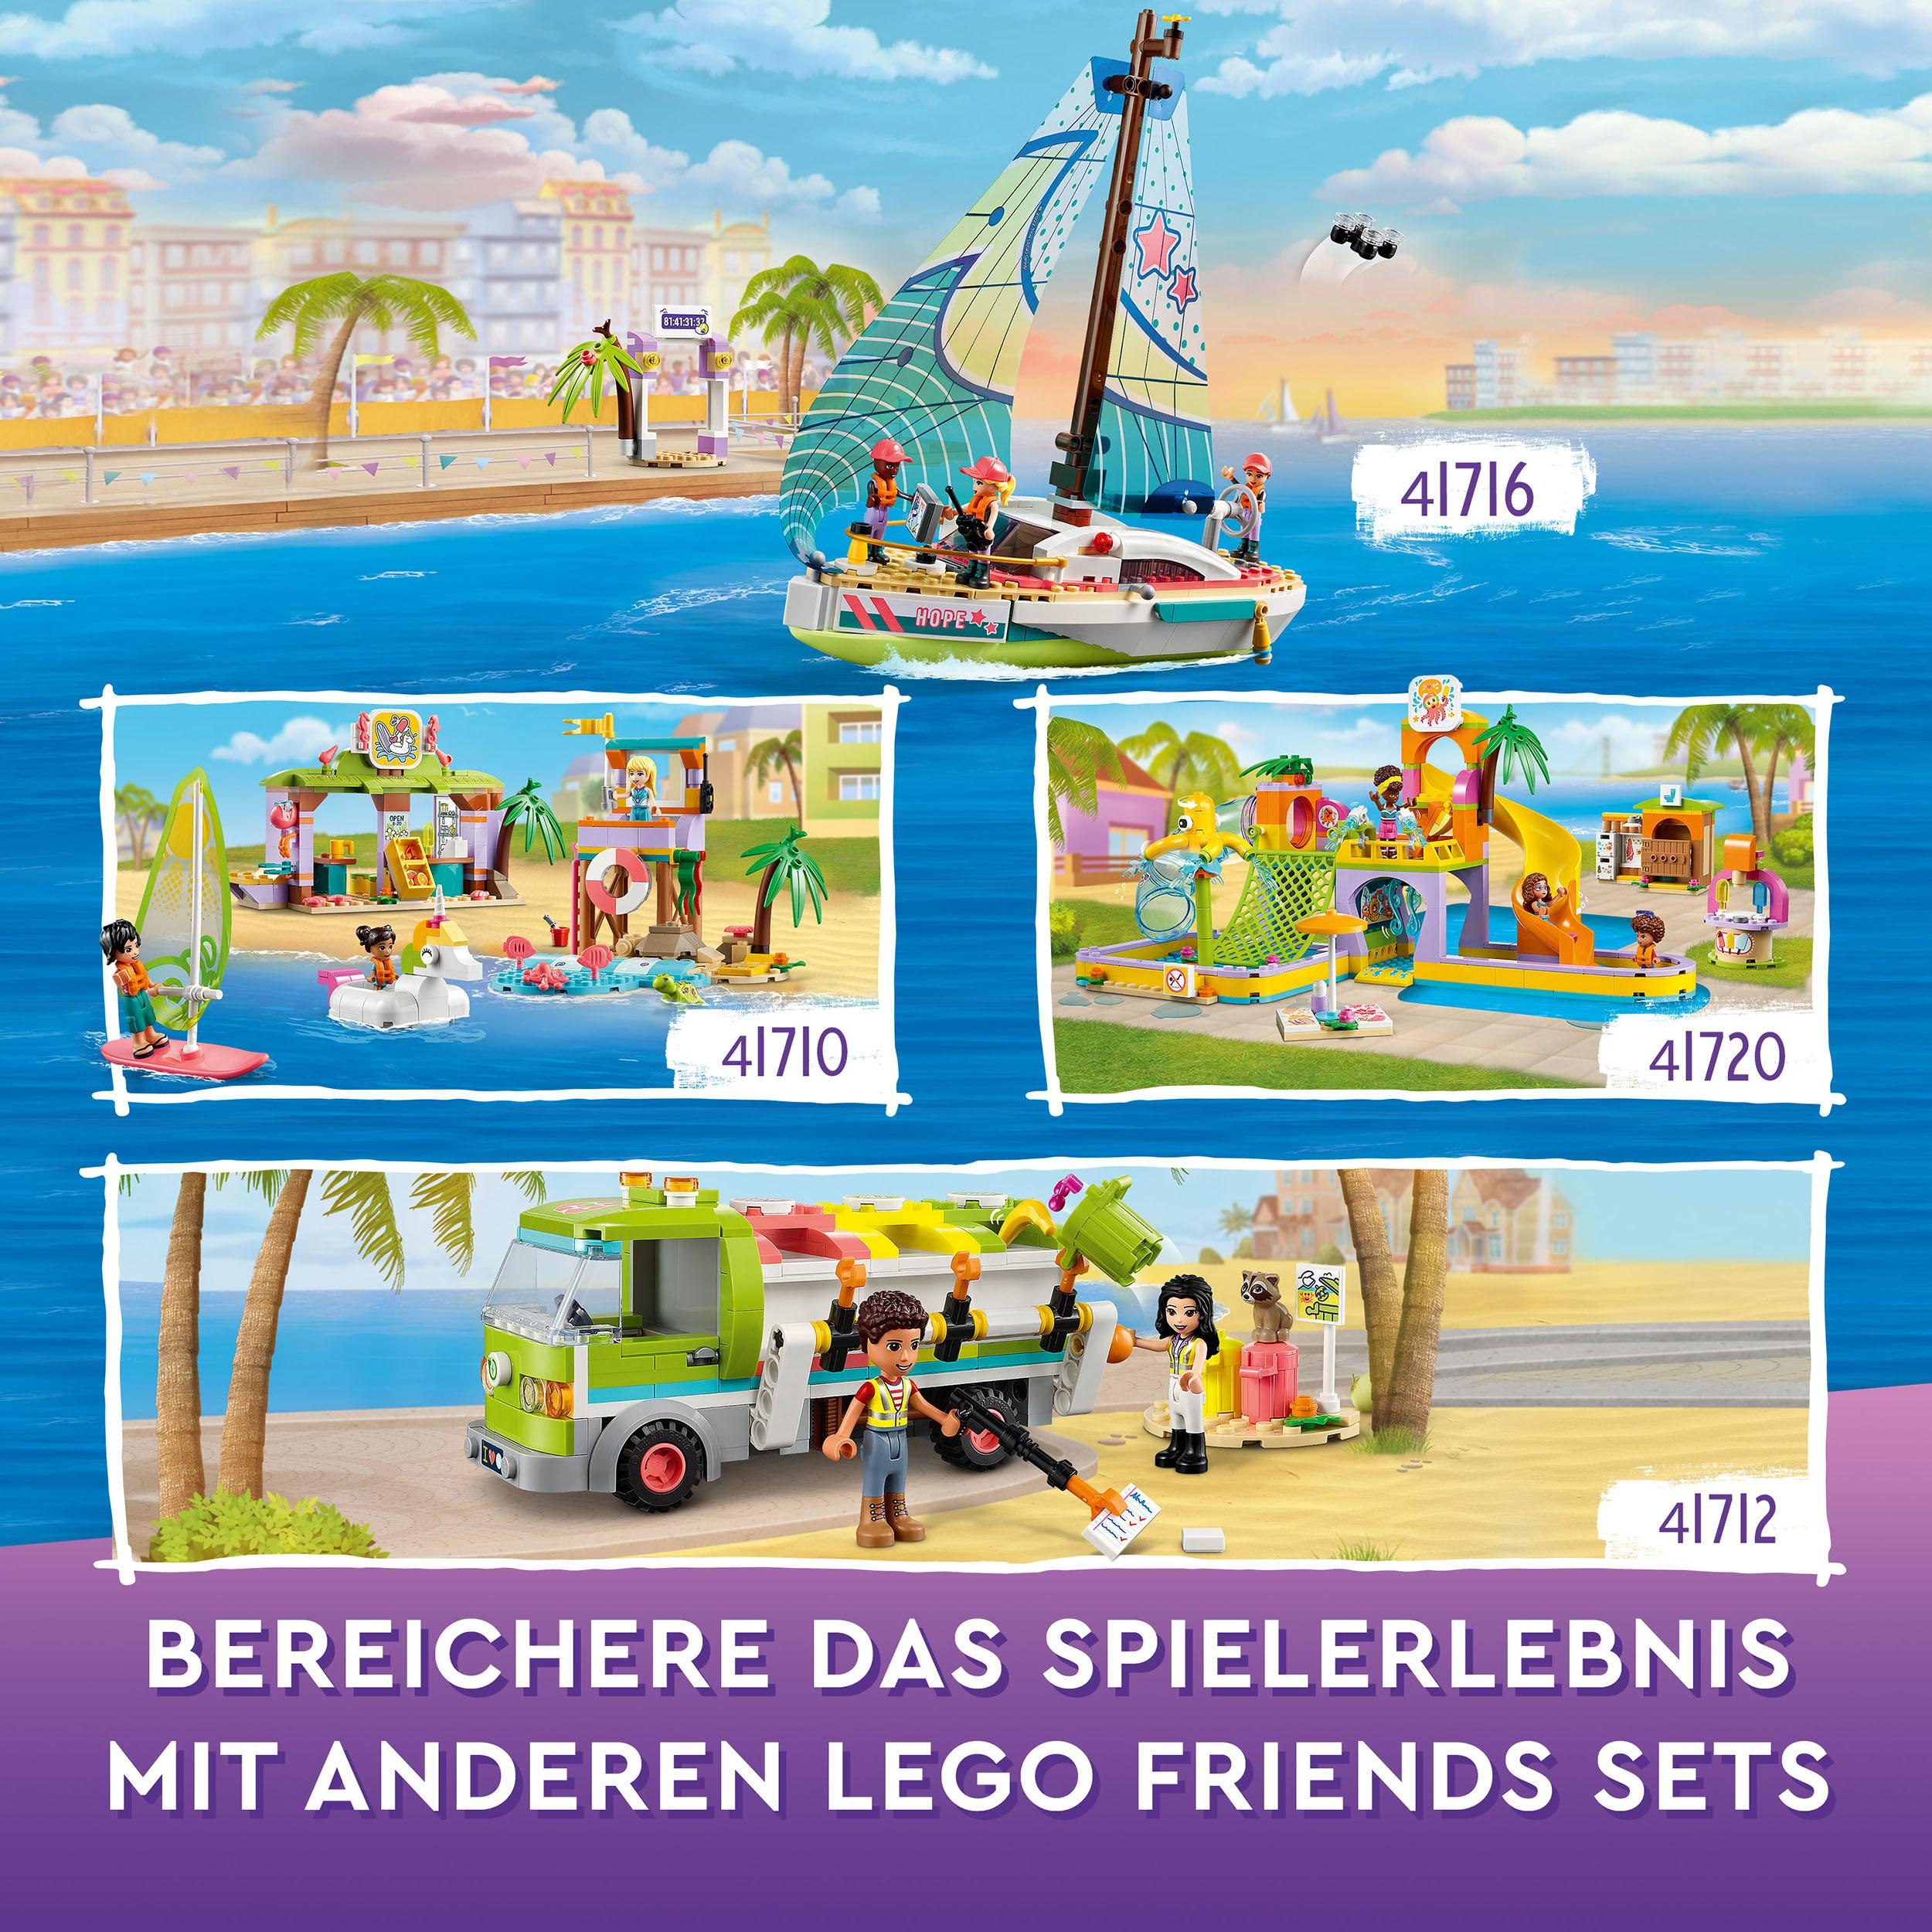 Friends LEGO 41720 Wassererlebnispark Bausatz, Mehrfarbig